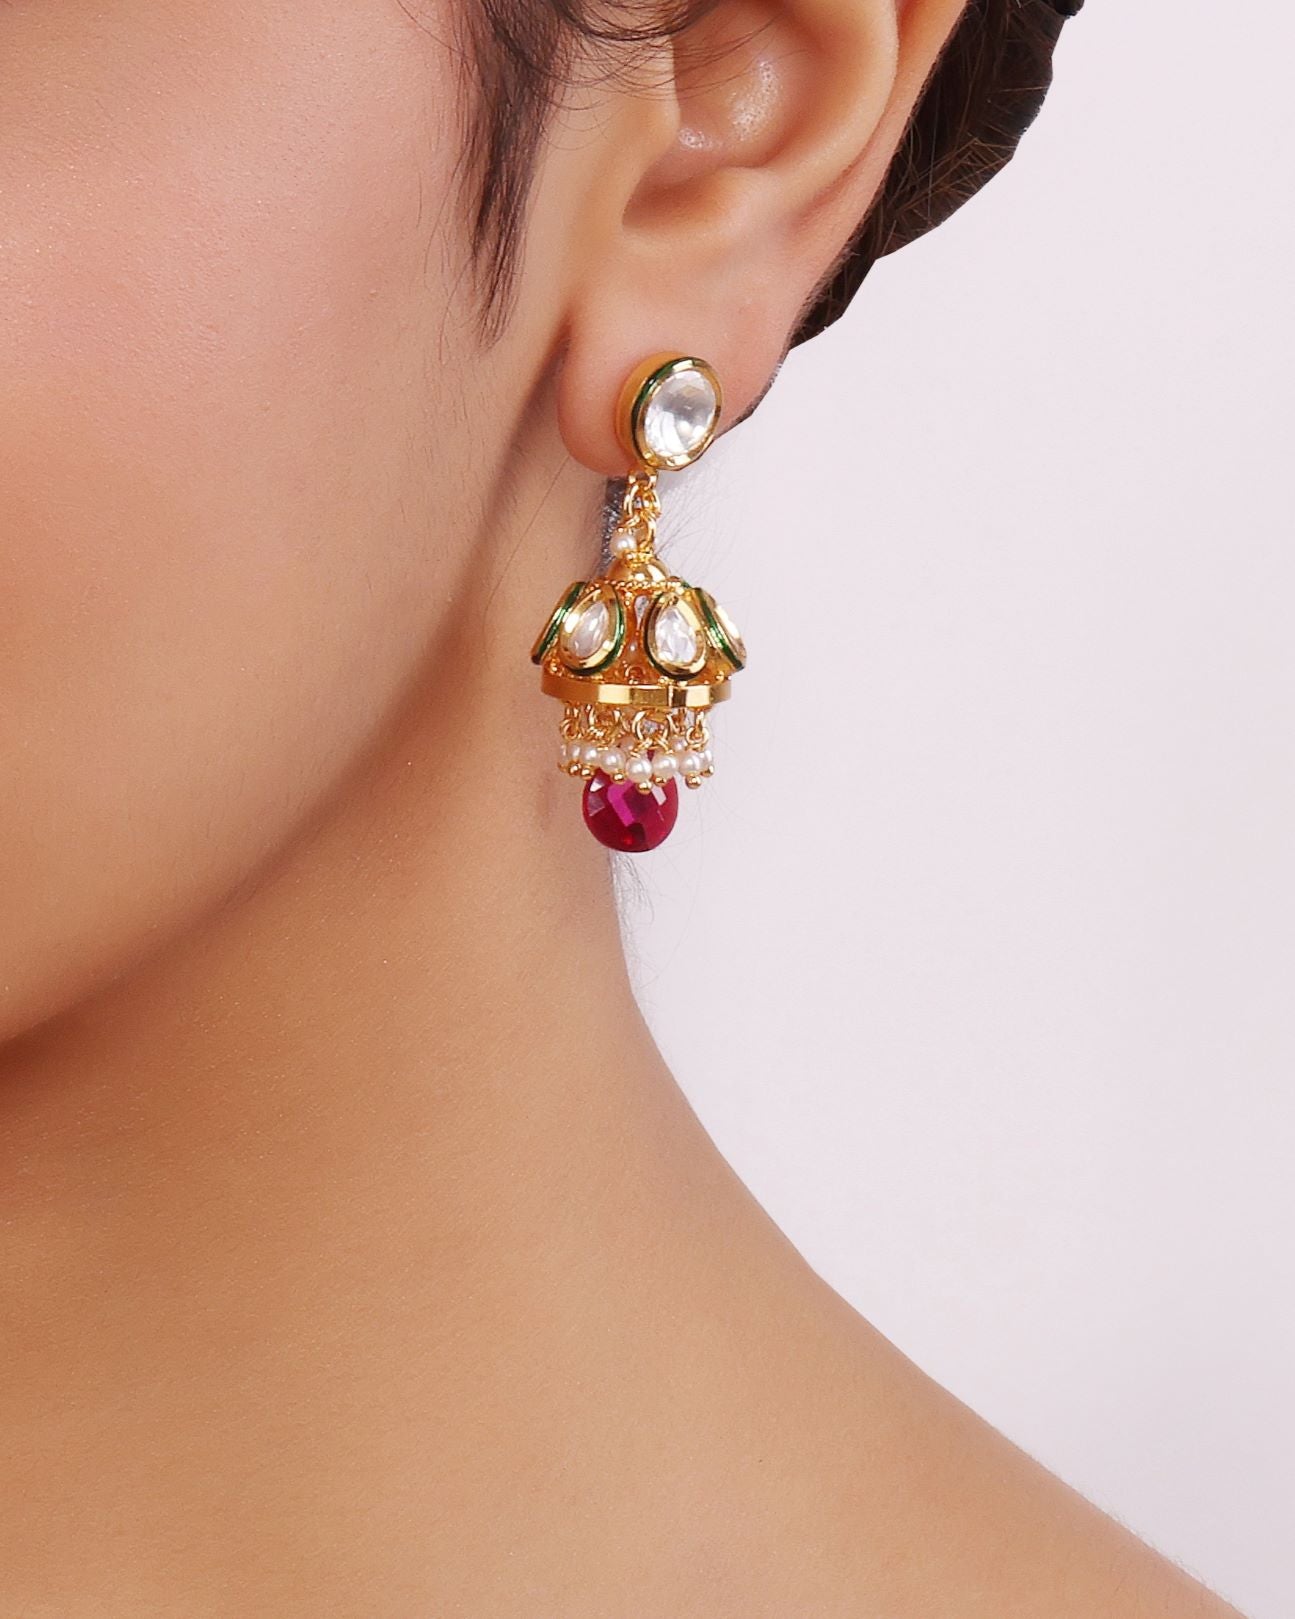 Orb Jhumka Earrings